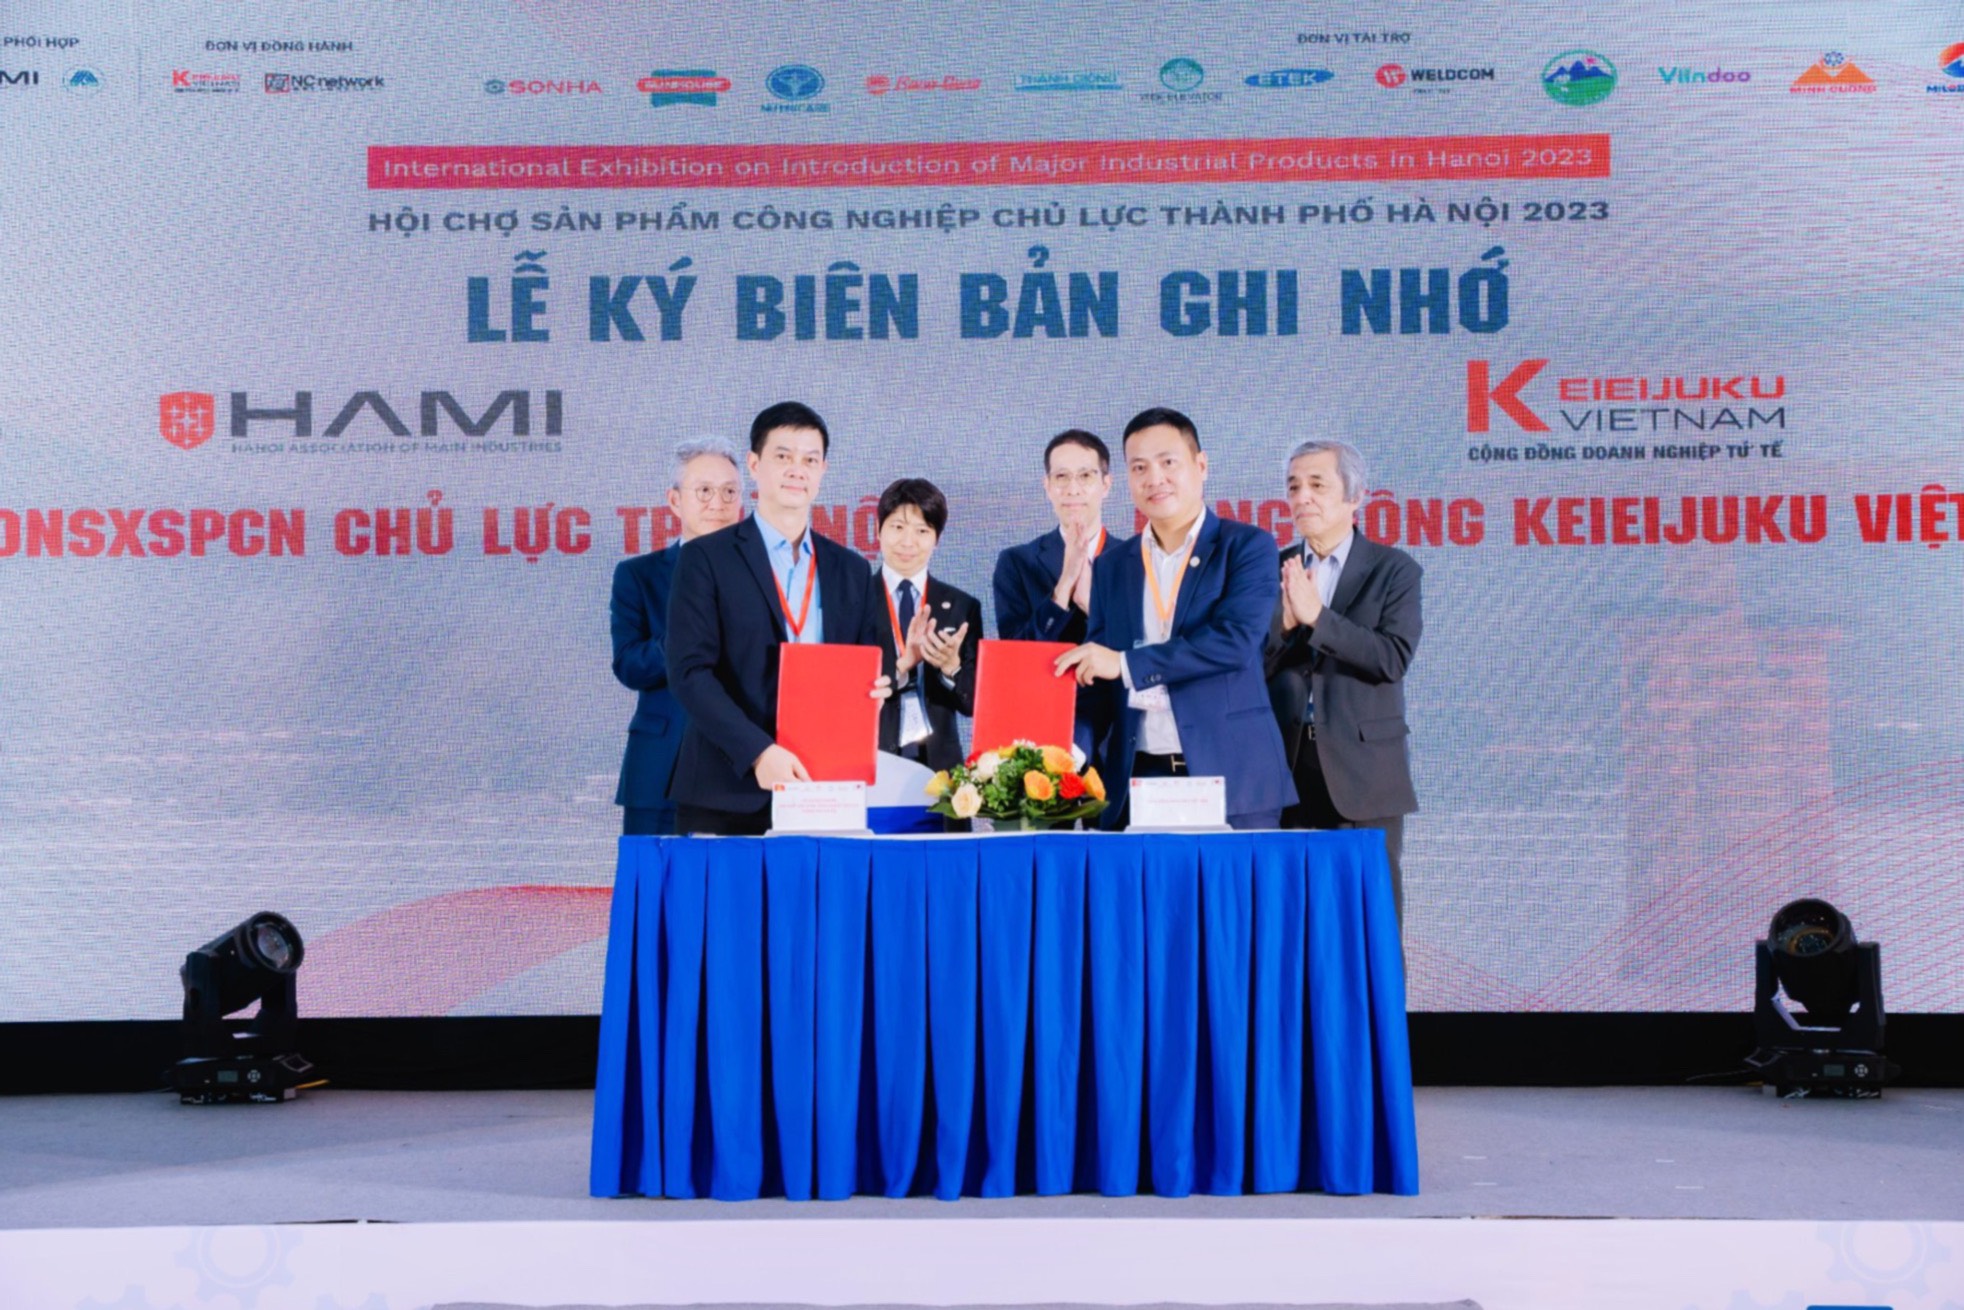 Máy Tính Thánh Gióng tham gia Hội chợ sản phẩm công nghiệp chủ lực thành phố Hà Nội năm 2023